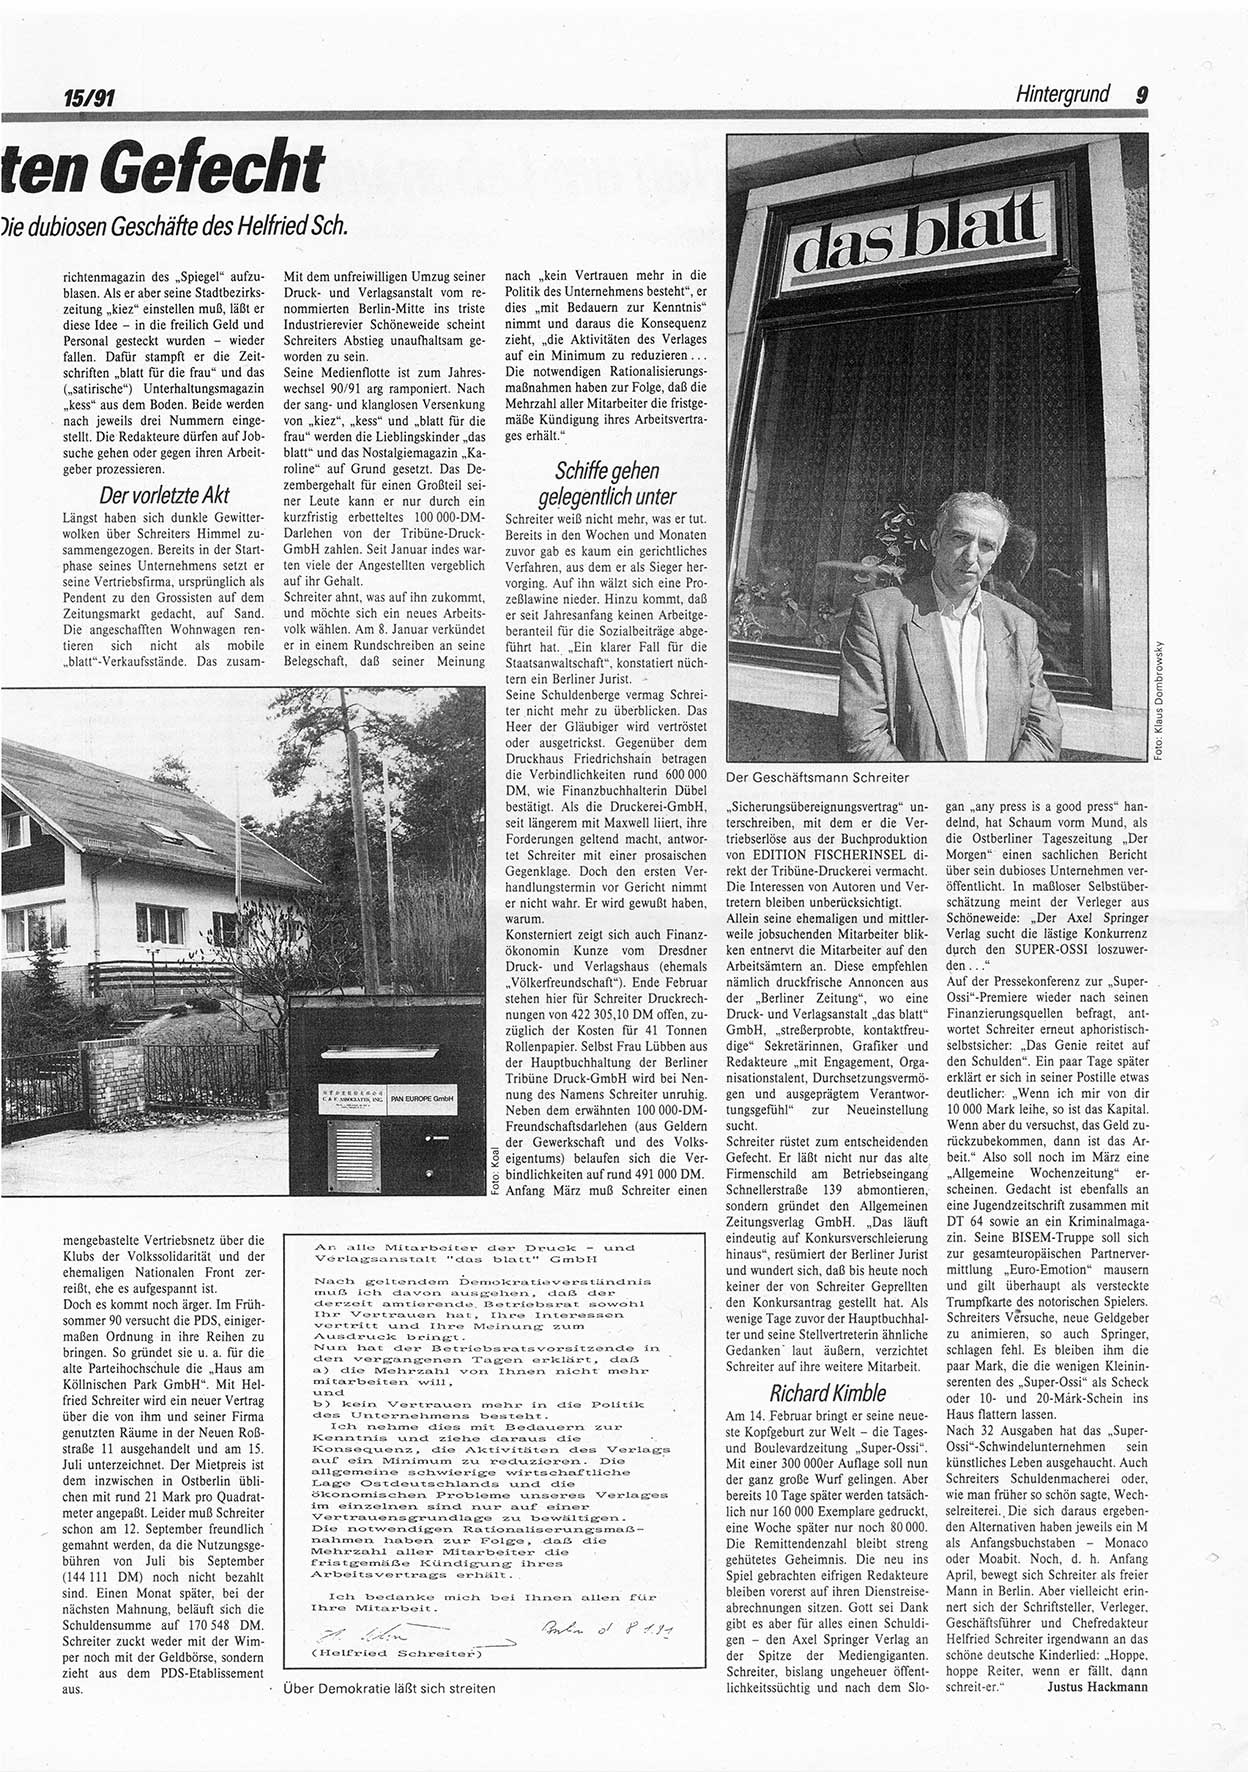 Die Andere, Unabhängige Wochenzeitung für Politik, Kultur und Kunst, Ausgabe 15 vom 10.4.1991, Seite 9 (And. W.-Zg. Ausg. 15 1991, S. 9)